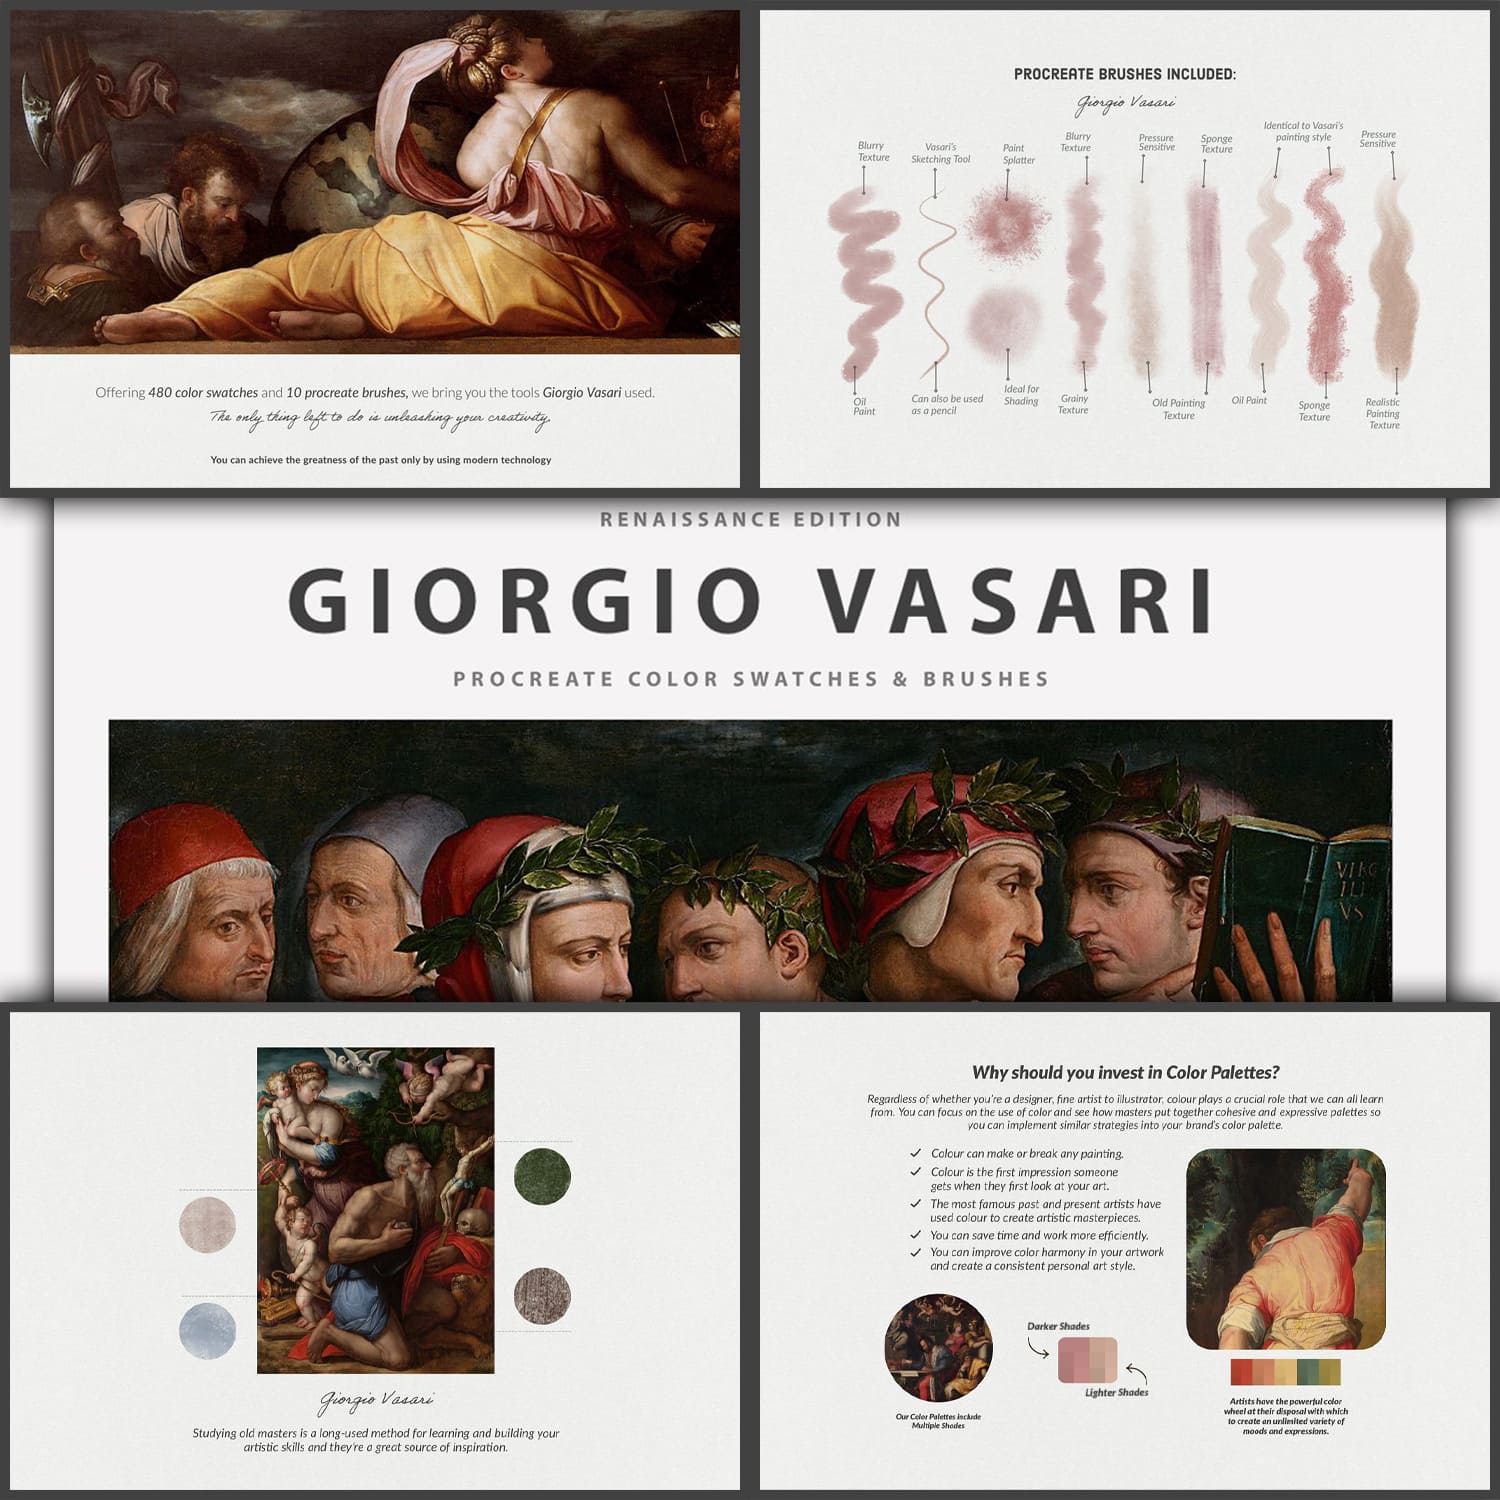 Giorgio Vasari Procreate Brushes cover.